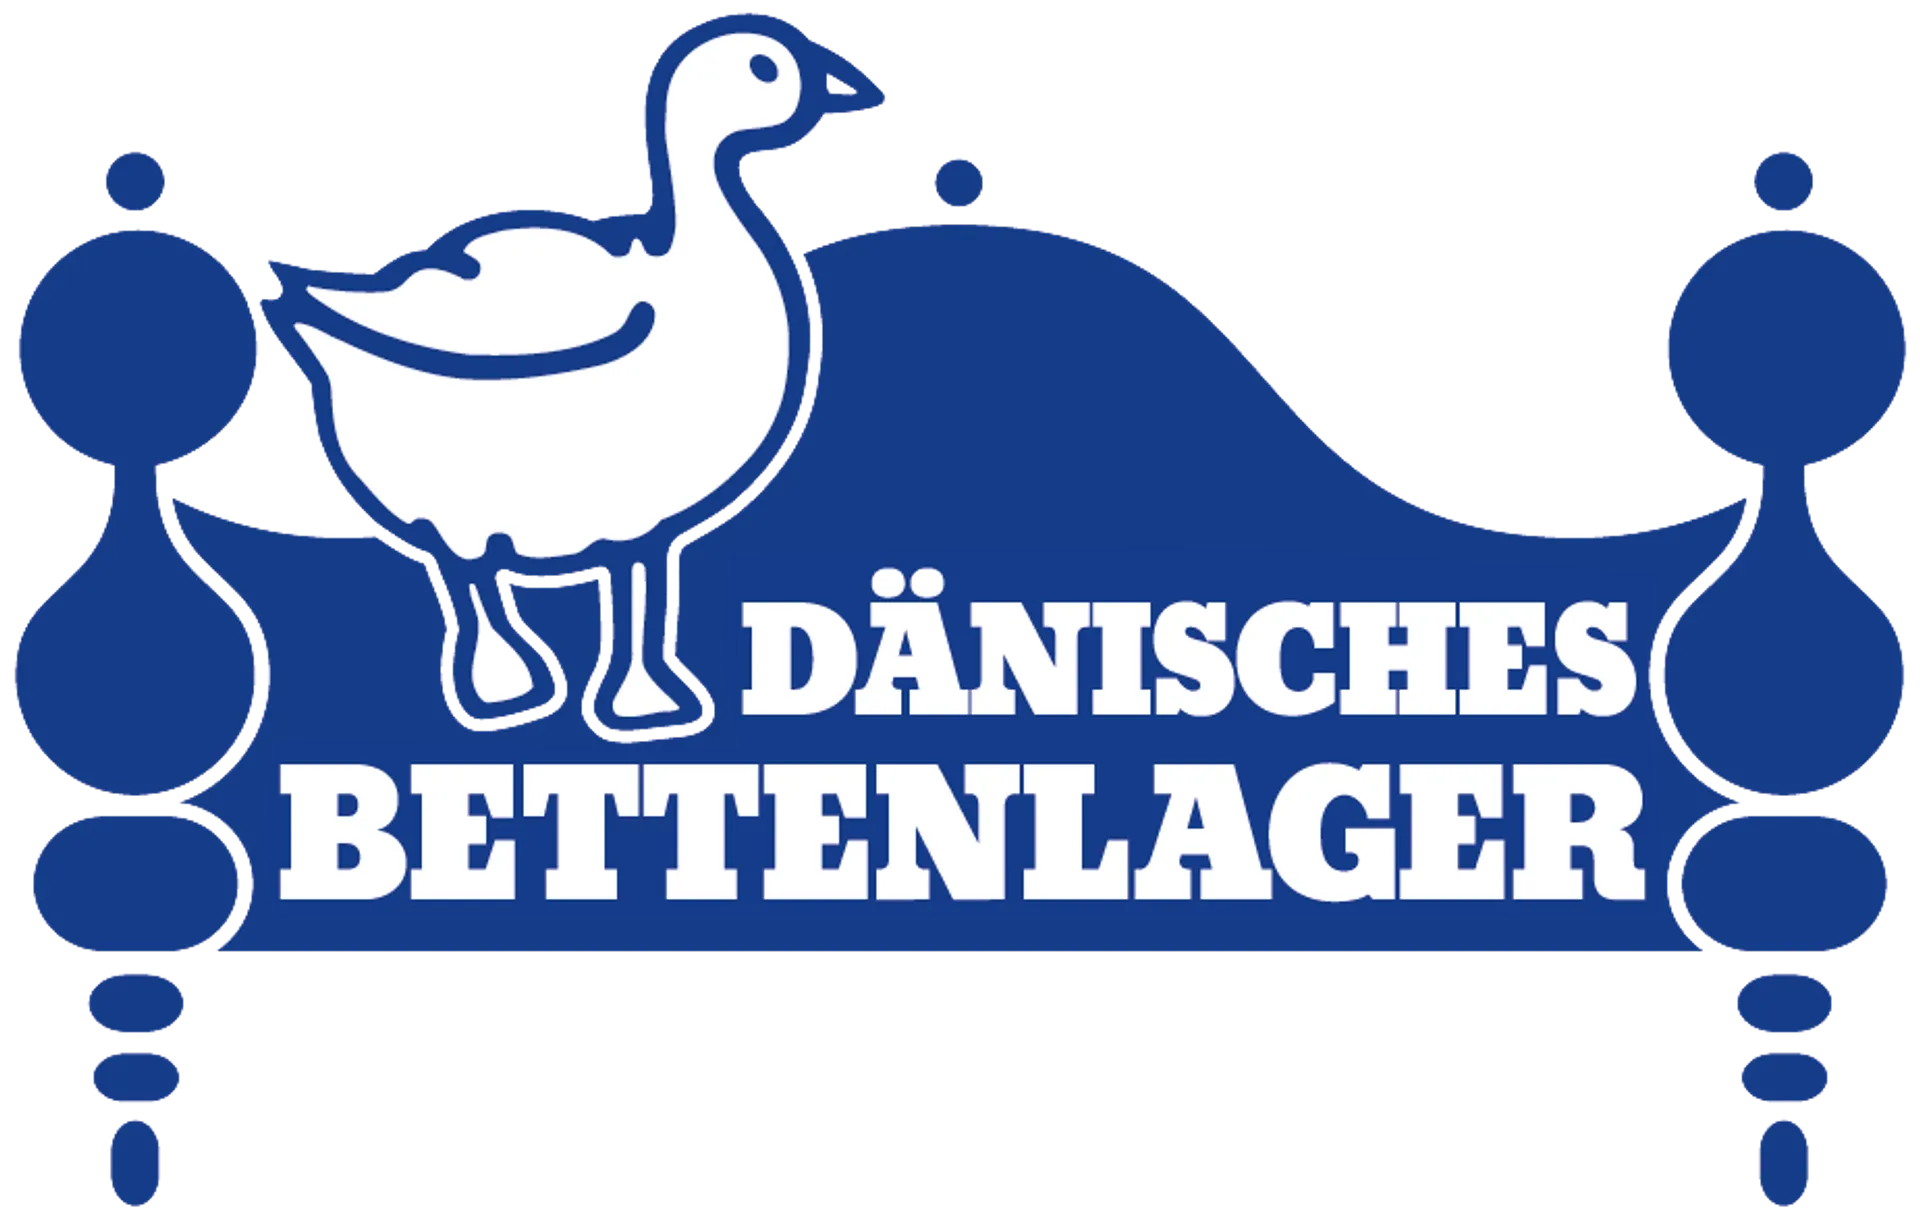 DÄNISCHES BETTENLAGER logo